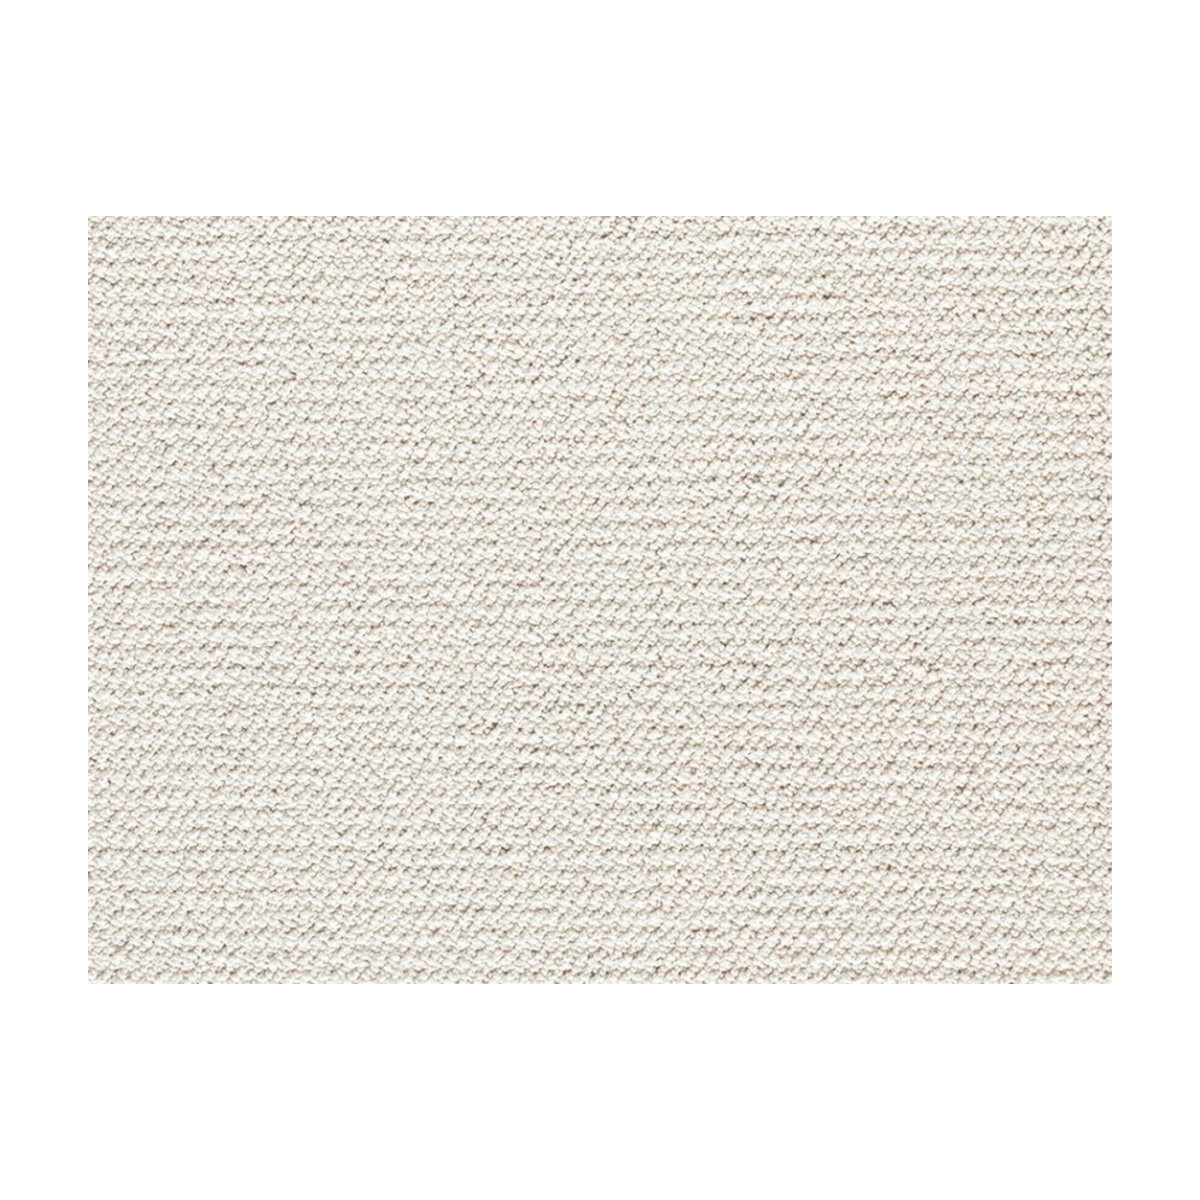 AKCE: 400x430 cm Metrážový koberec Corvino 31 bílý